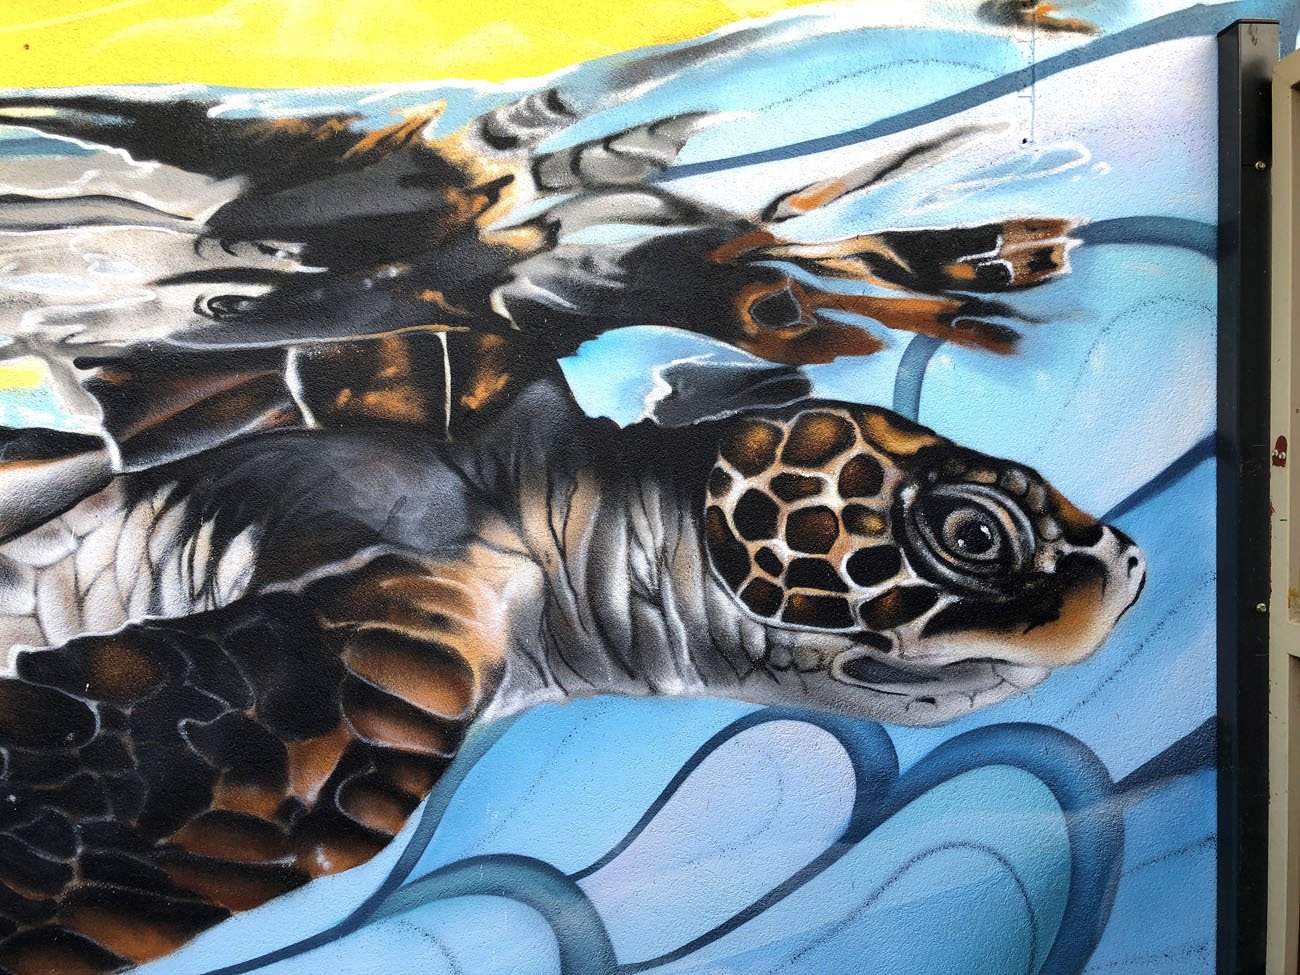 Turtle mural painted by Lukas Kasper